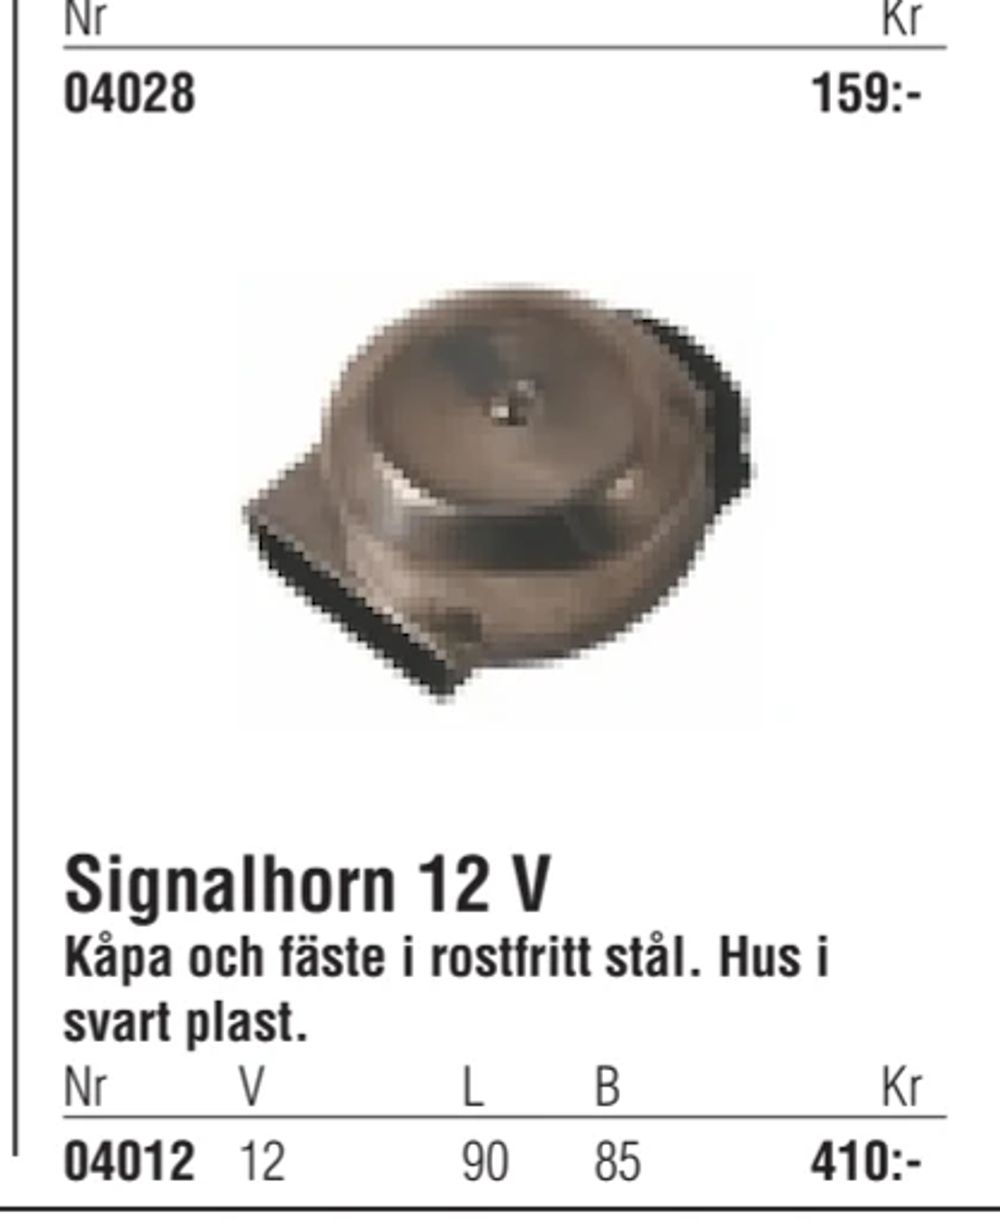 Erbjudanden på Signalhorn 12 V från Erlandsons Brygga för 410 kr